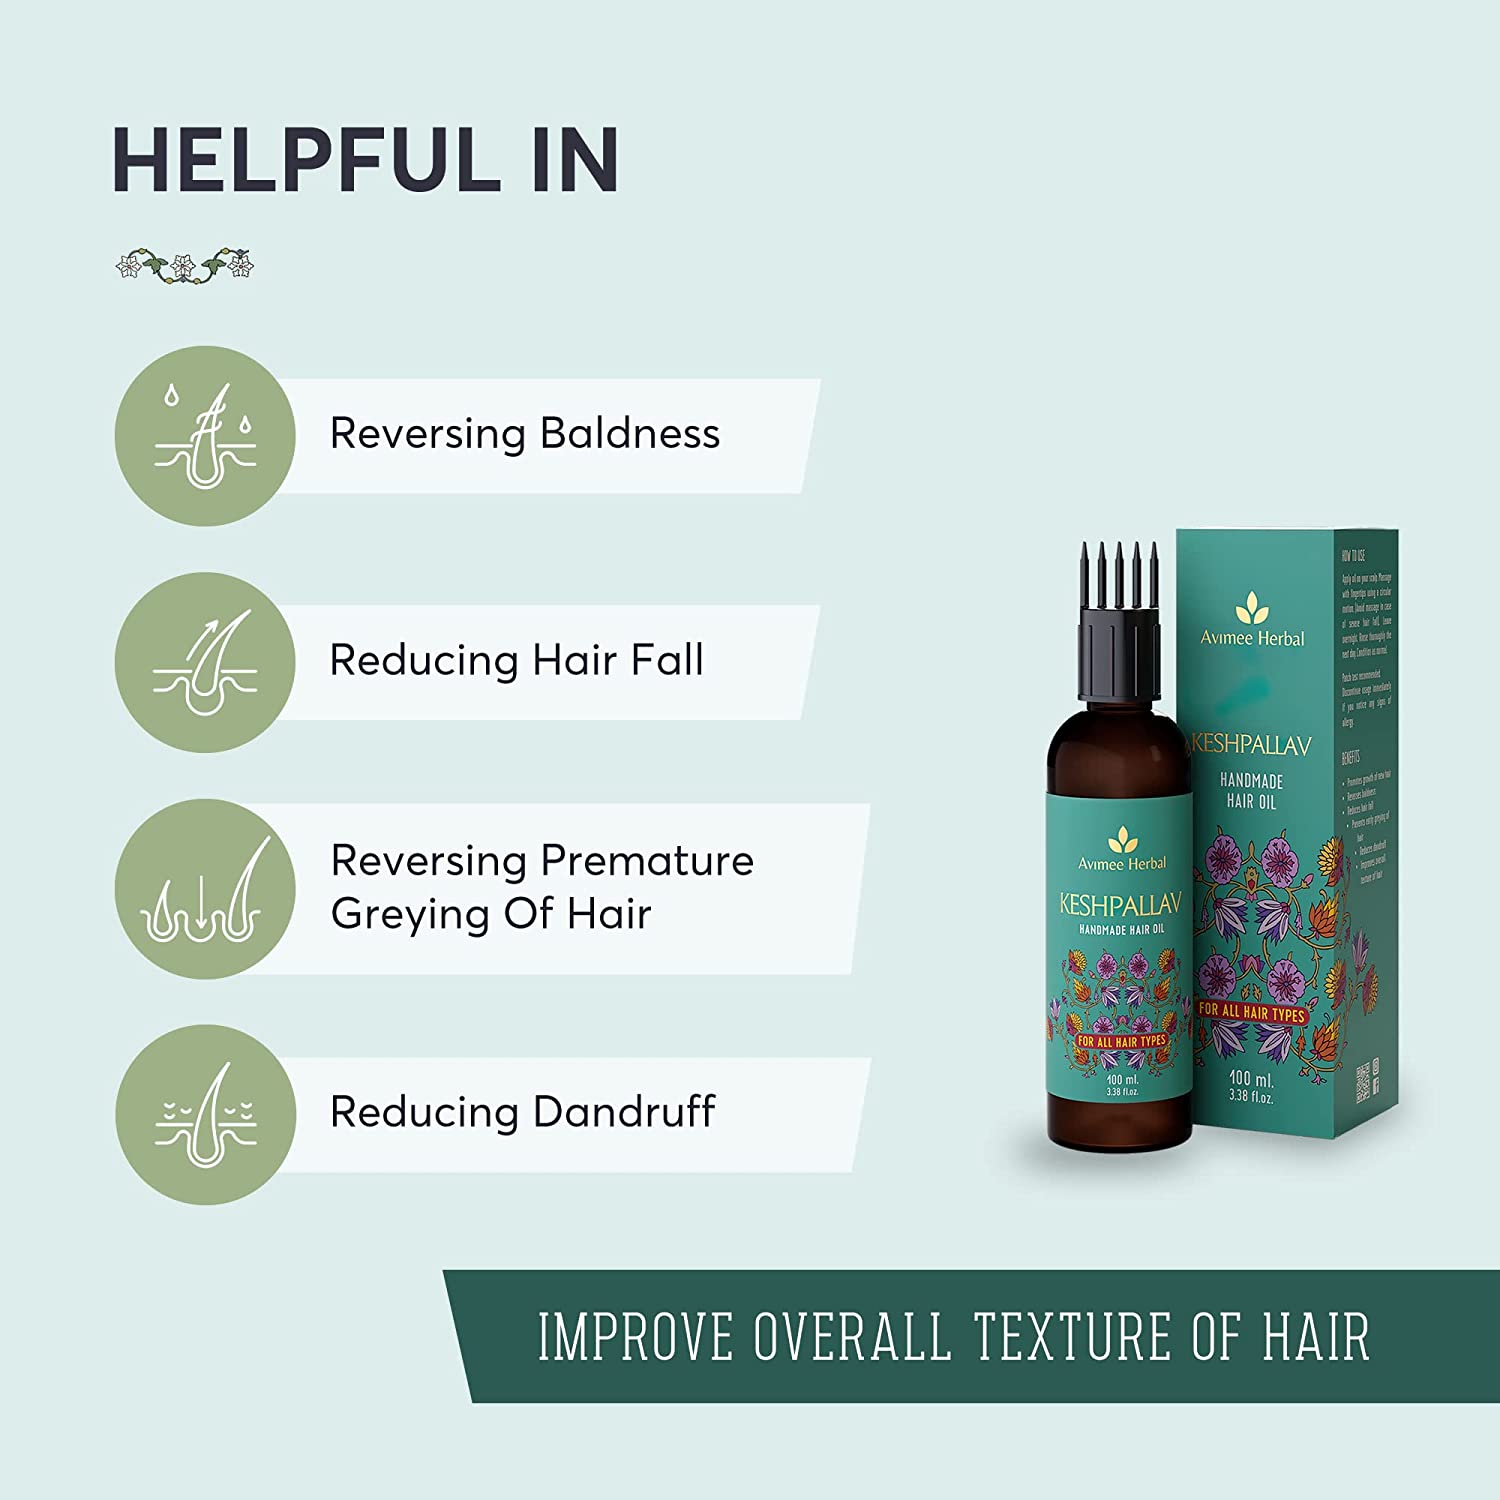 Avimee Herbal Keshpallav Hair Oil for Men and Women